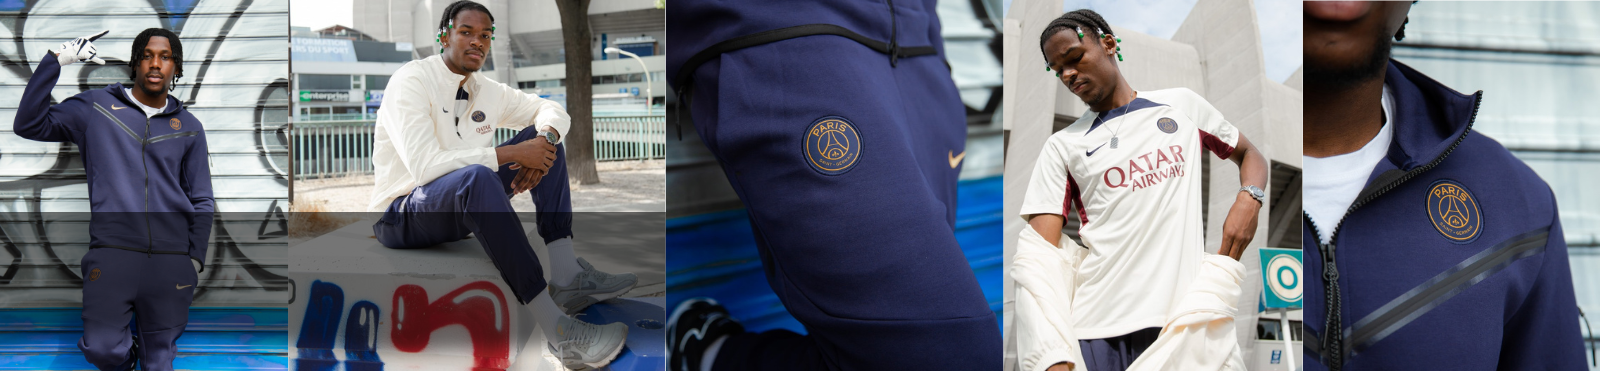 Survêtement PSG Collection 2019/2020 CONFORT DRI-FIT Veste blanche pantalon  bleu